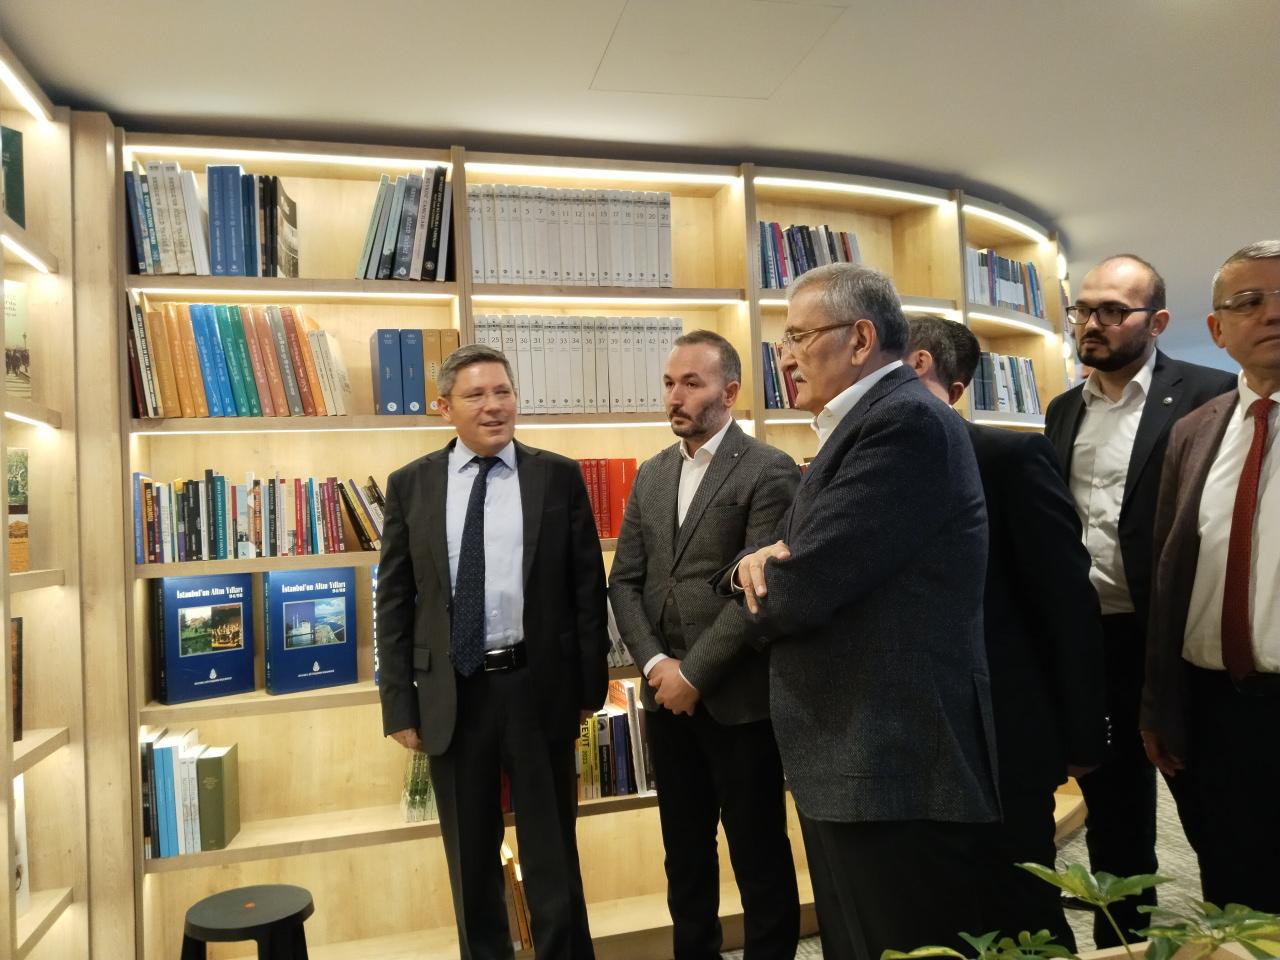 Dünyanın ilk yalı kütüphanesi Beykoz'da hizmete açıldı